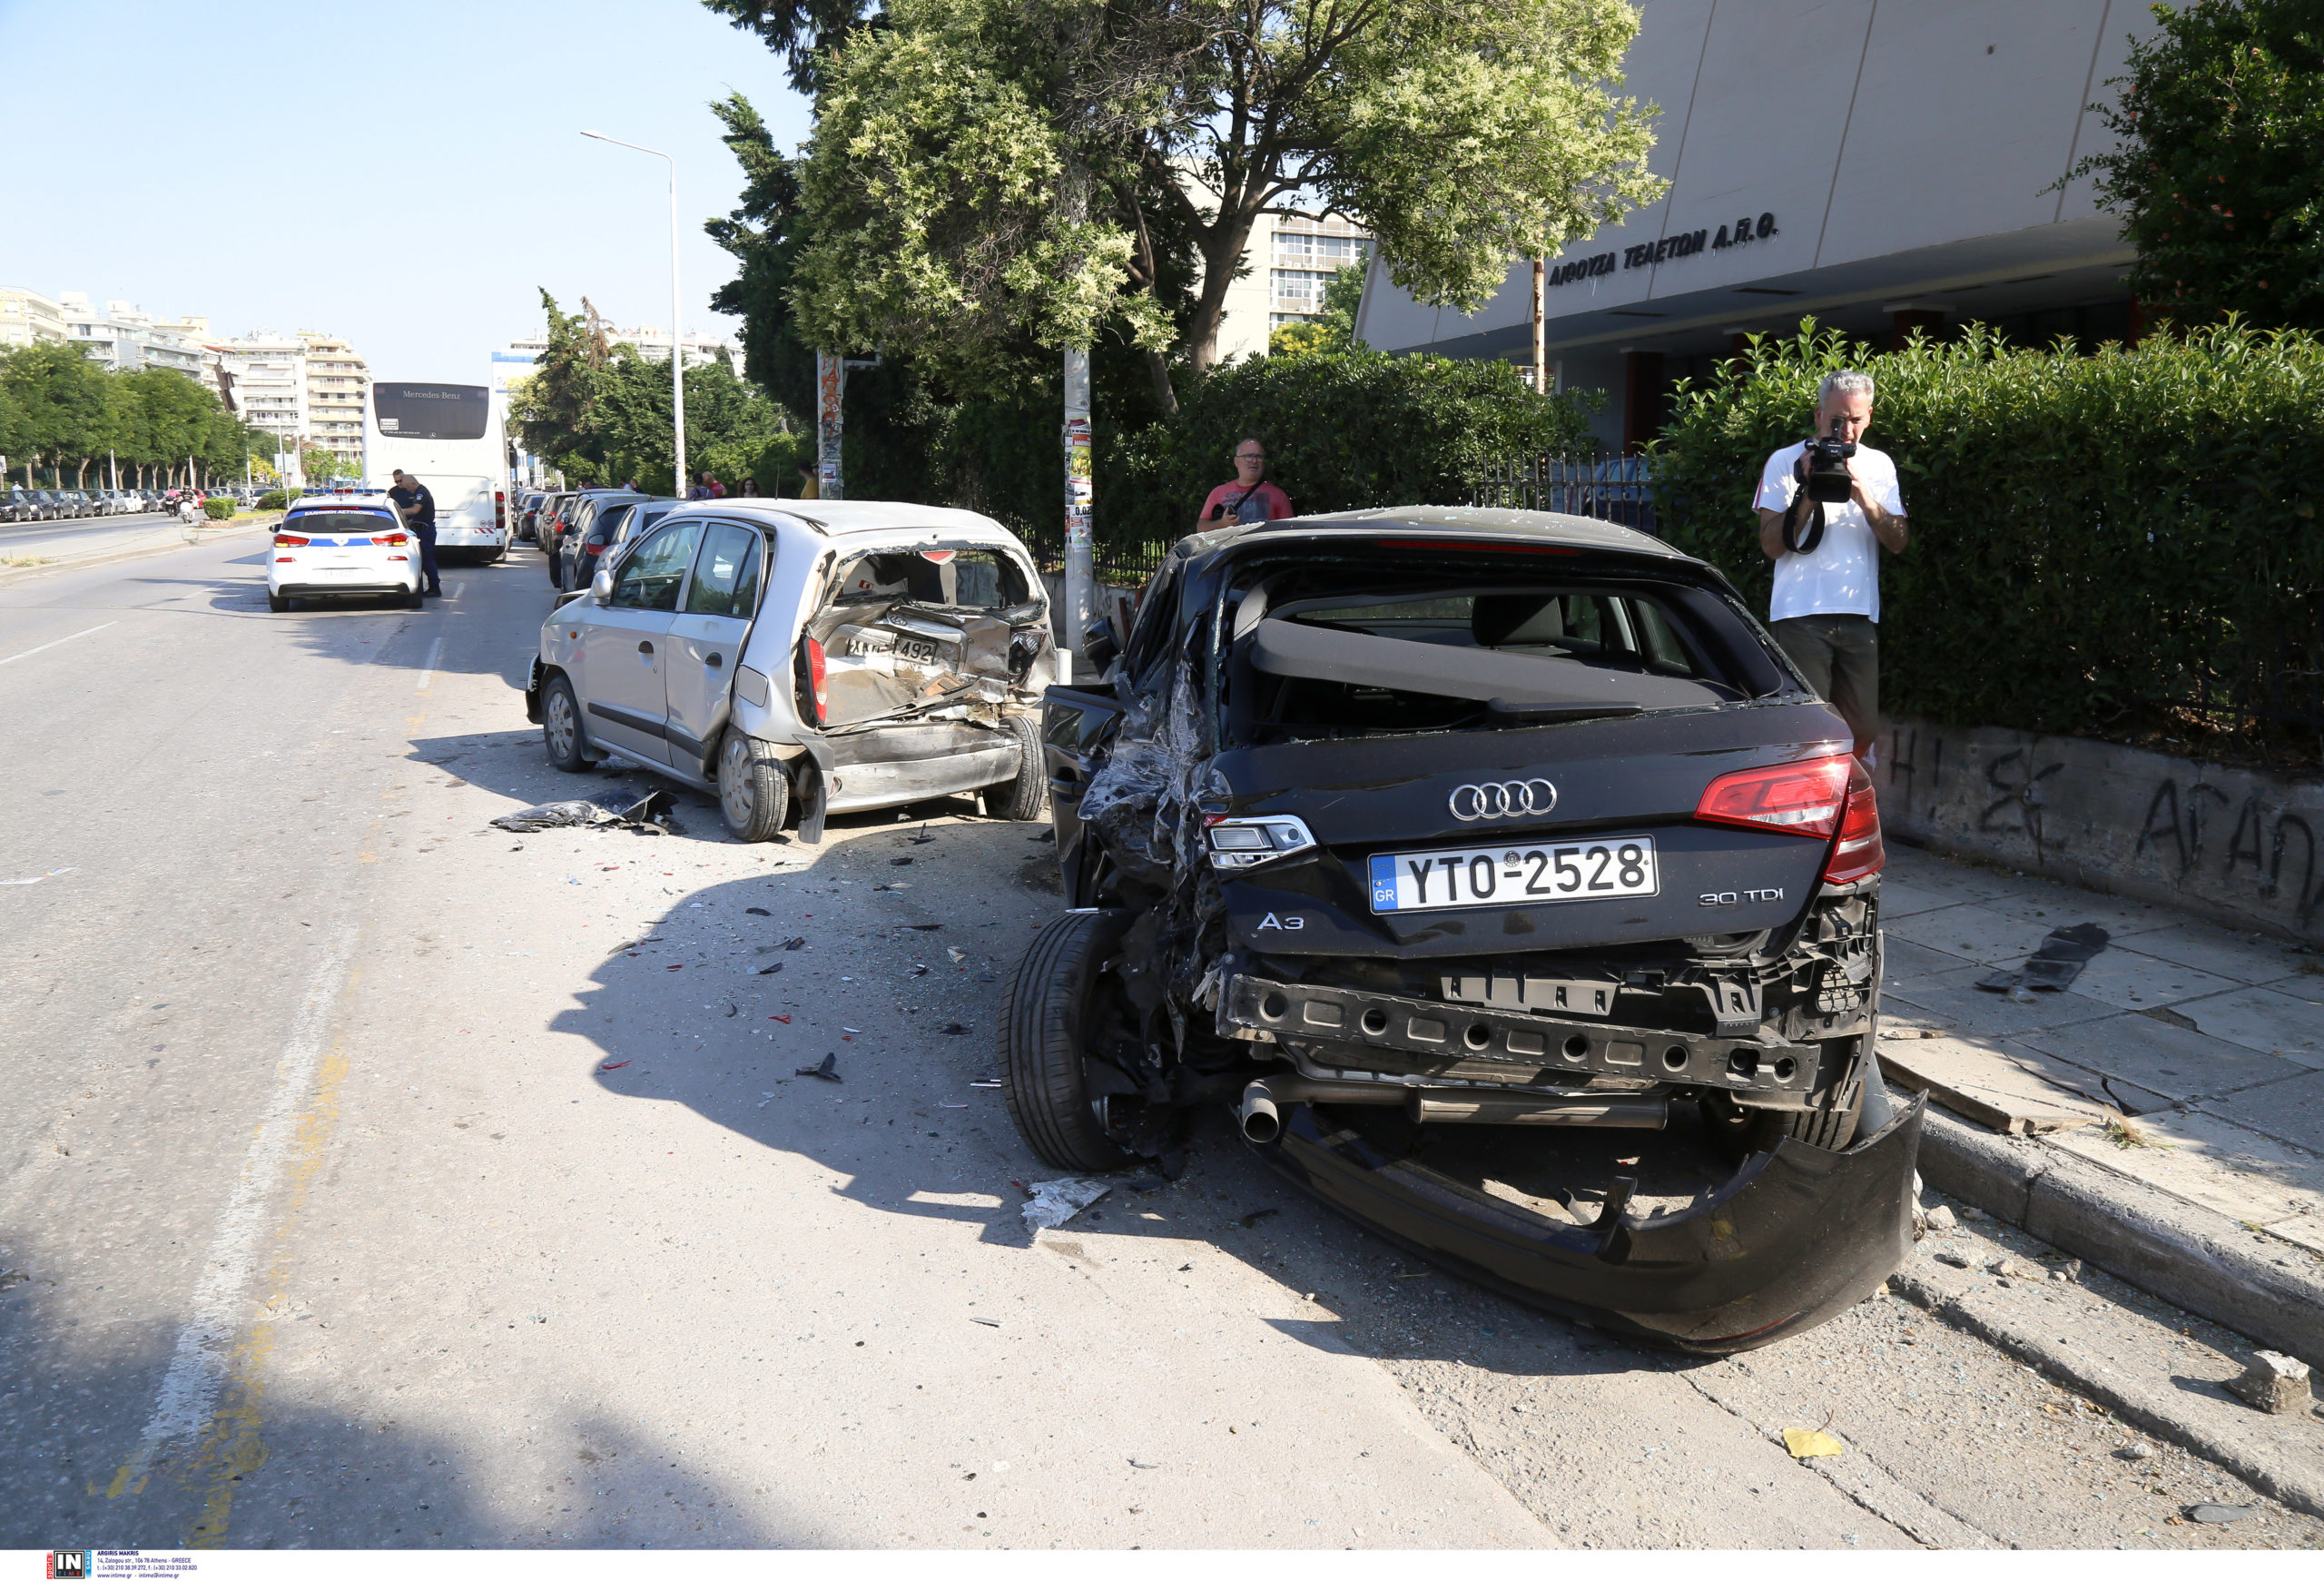 Θεσσαλονίκη: «Δεν κατάλαβα πώς έγινε» λέει ο οδηγός του λεωφορείου που έπεσε σε σταθμευμένα αυτοκίνητα